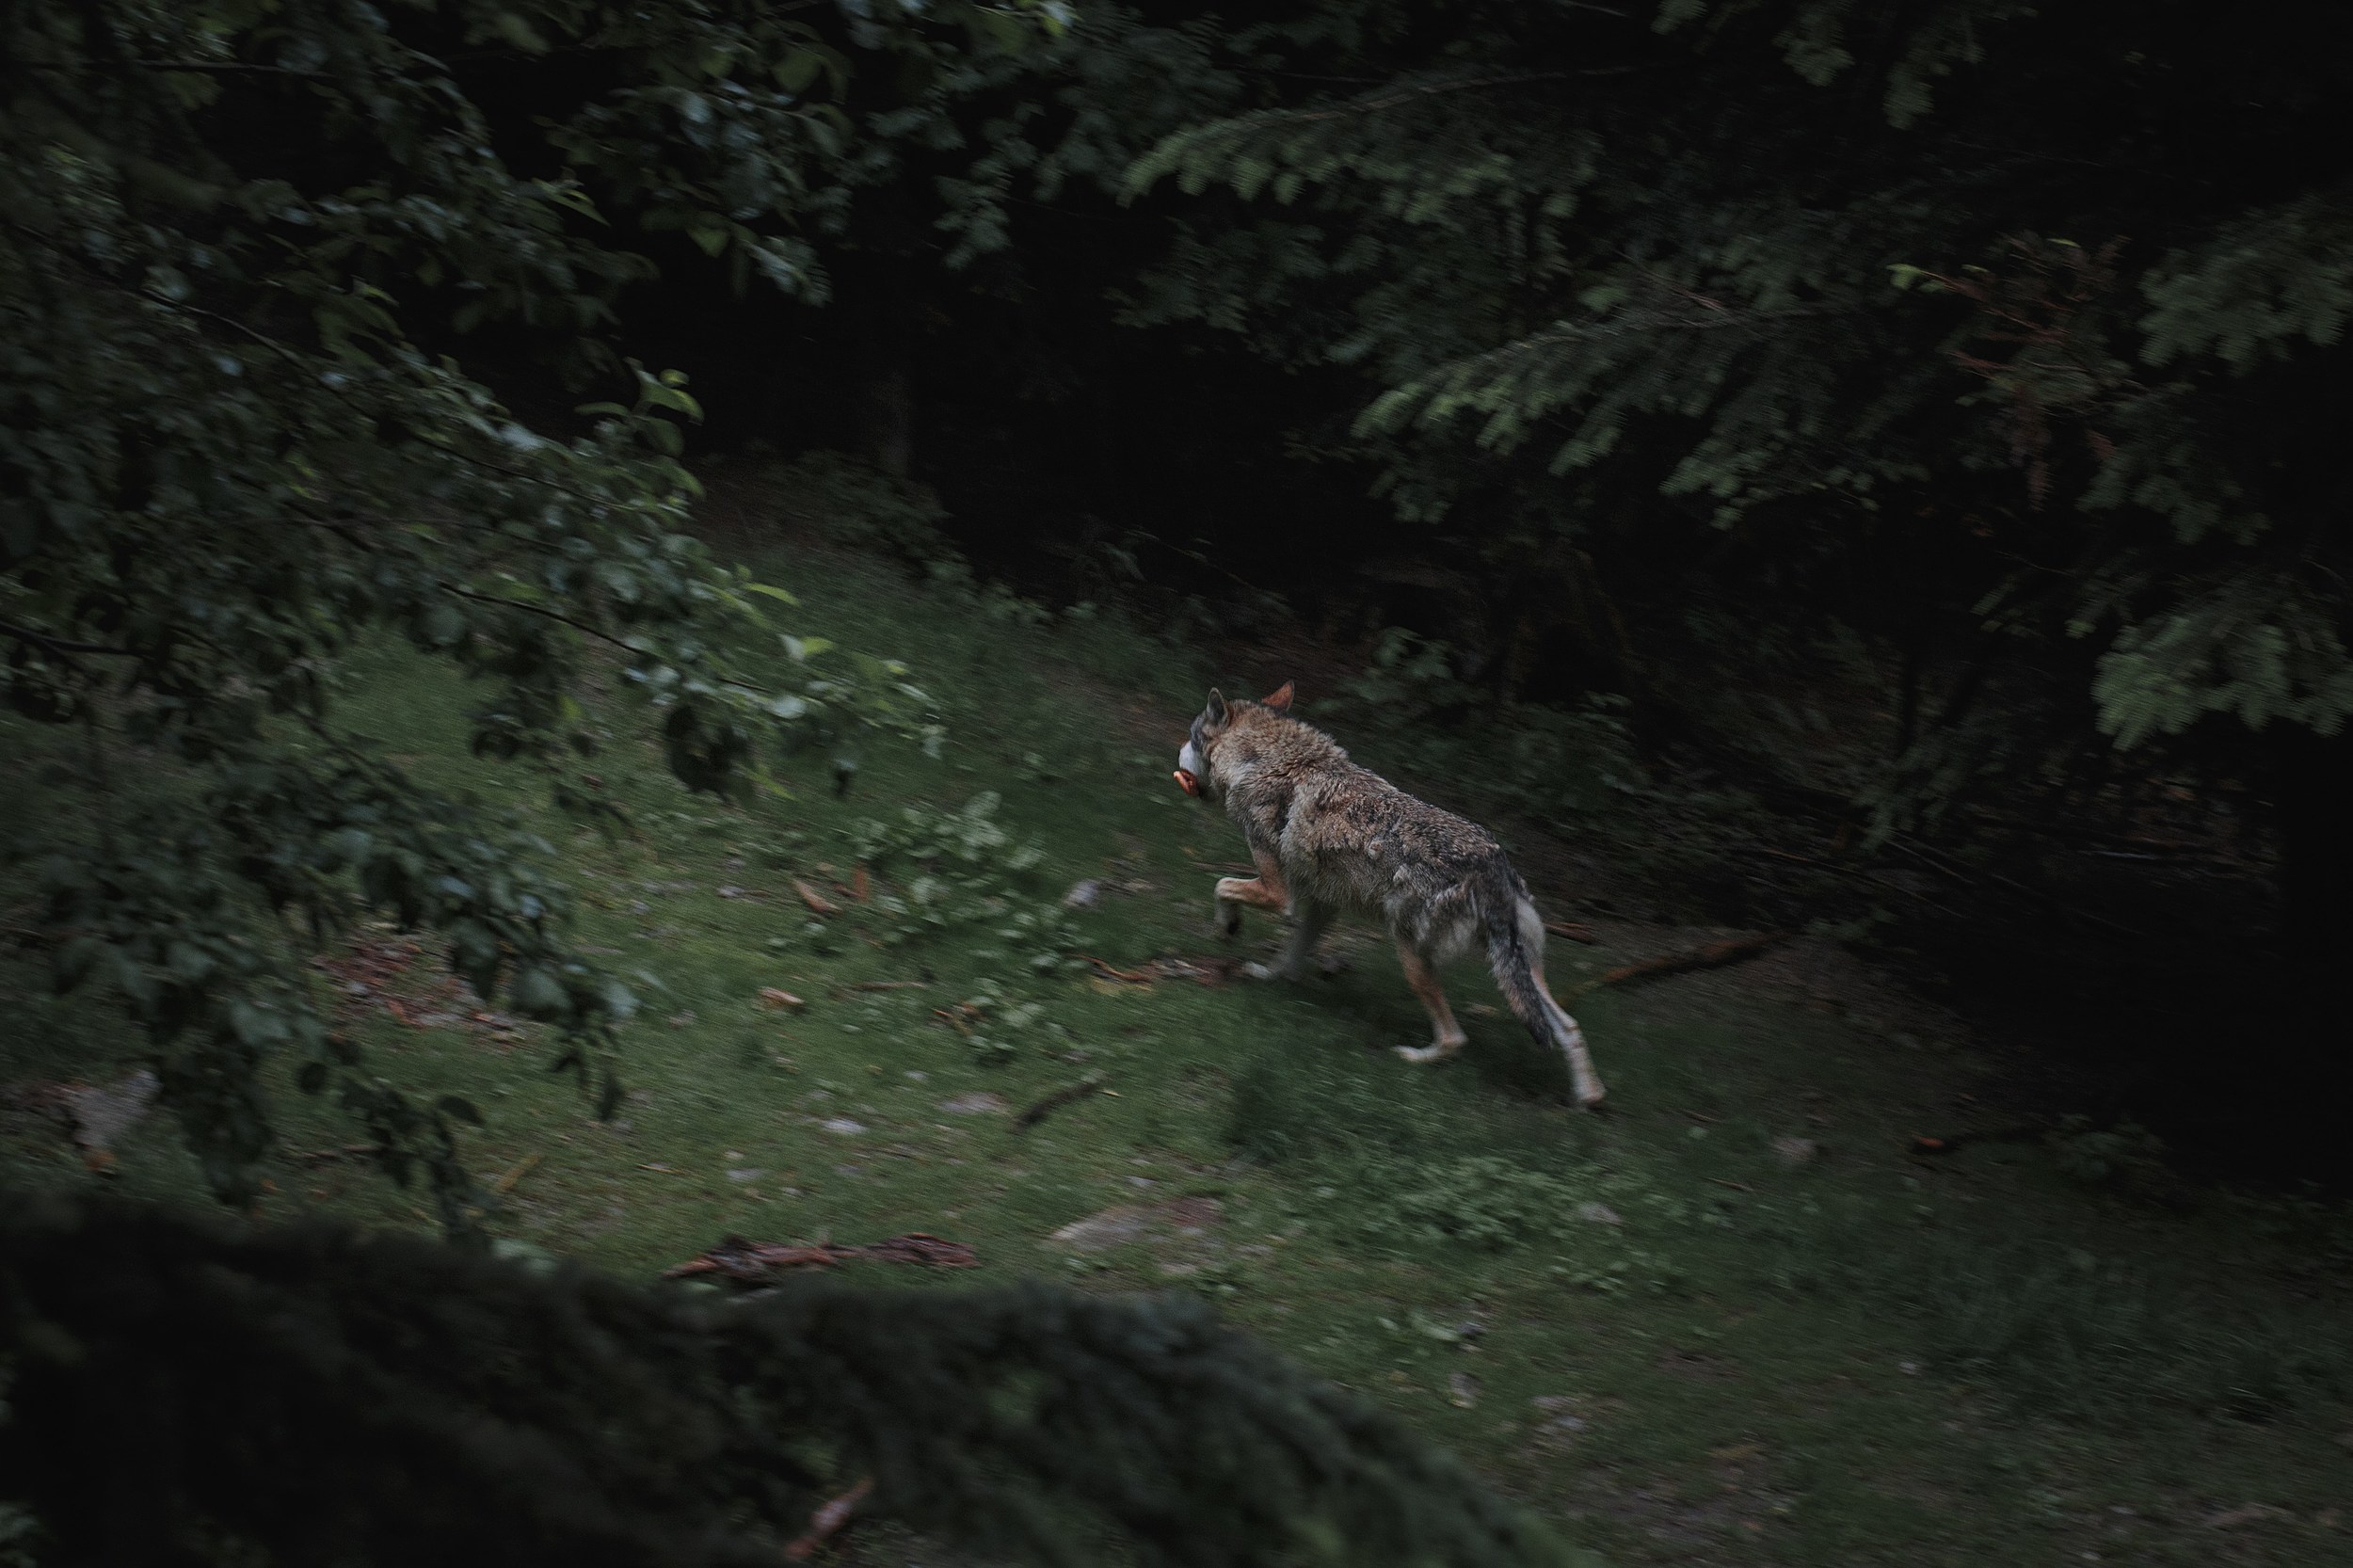 real werewolf sightings